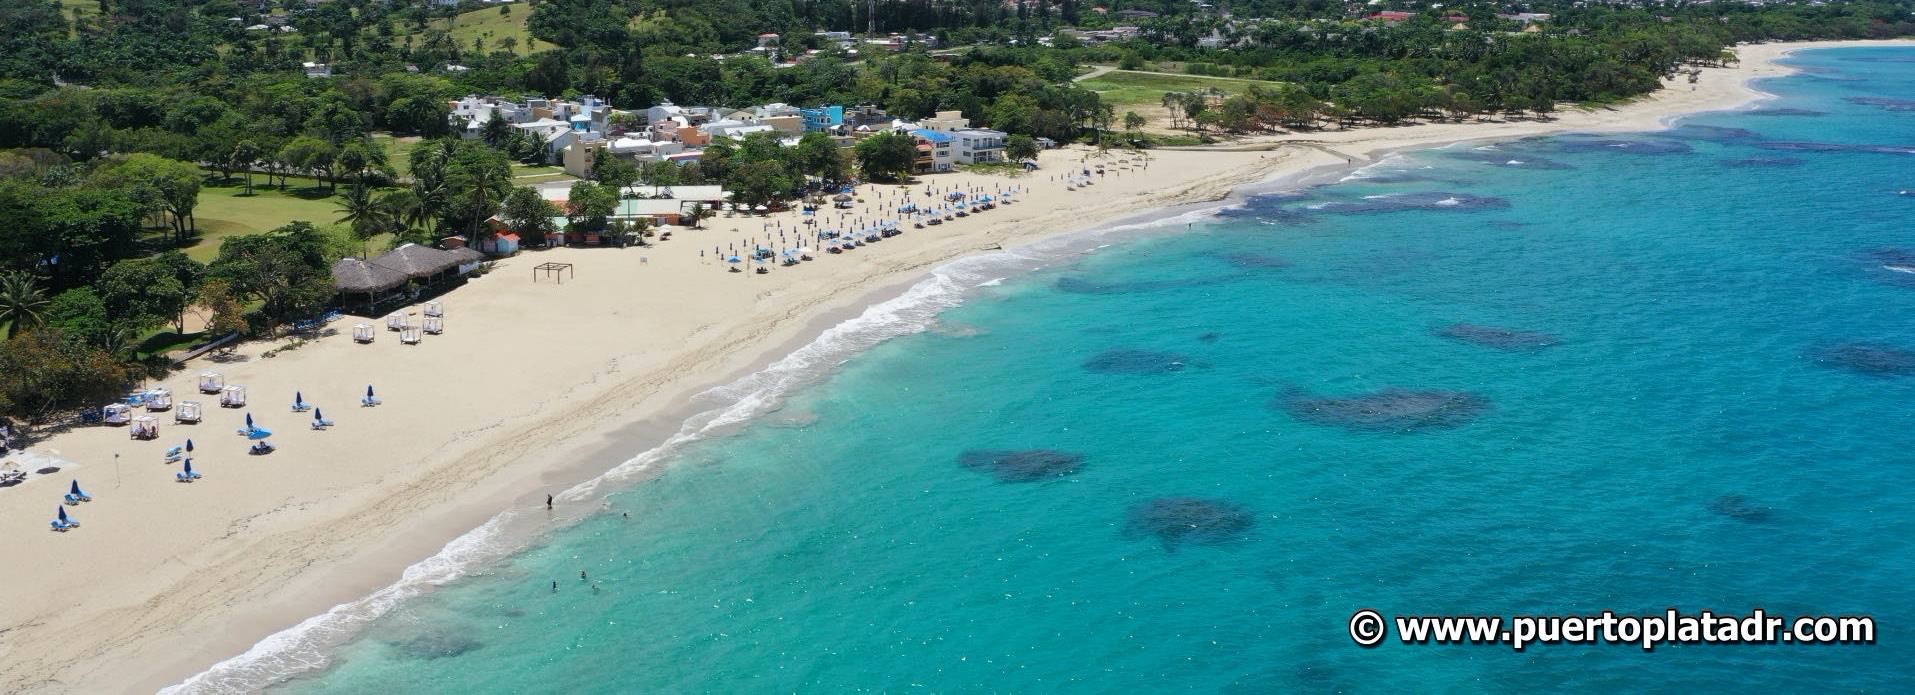 Aerial view of the Jack n Kite Beach Club in Playa Dorada